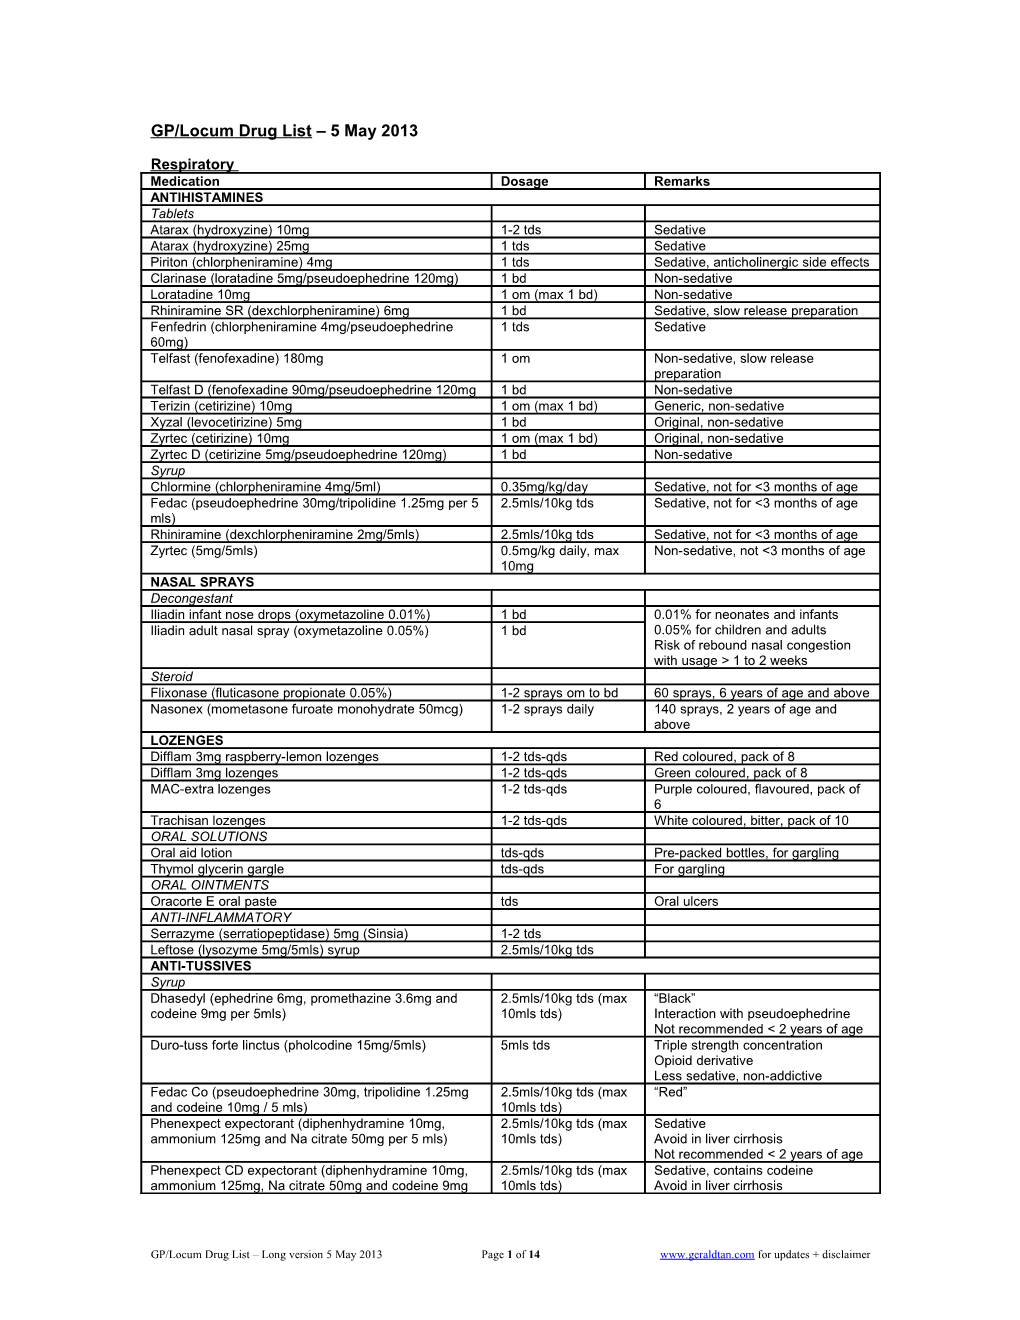 GP/Locum Drug List 5 May 2013